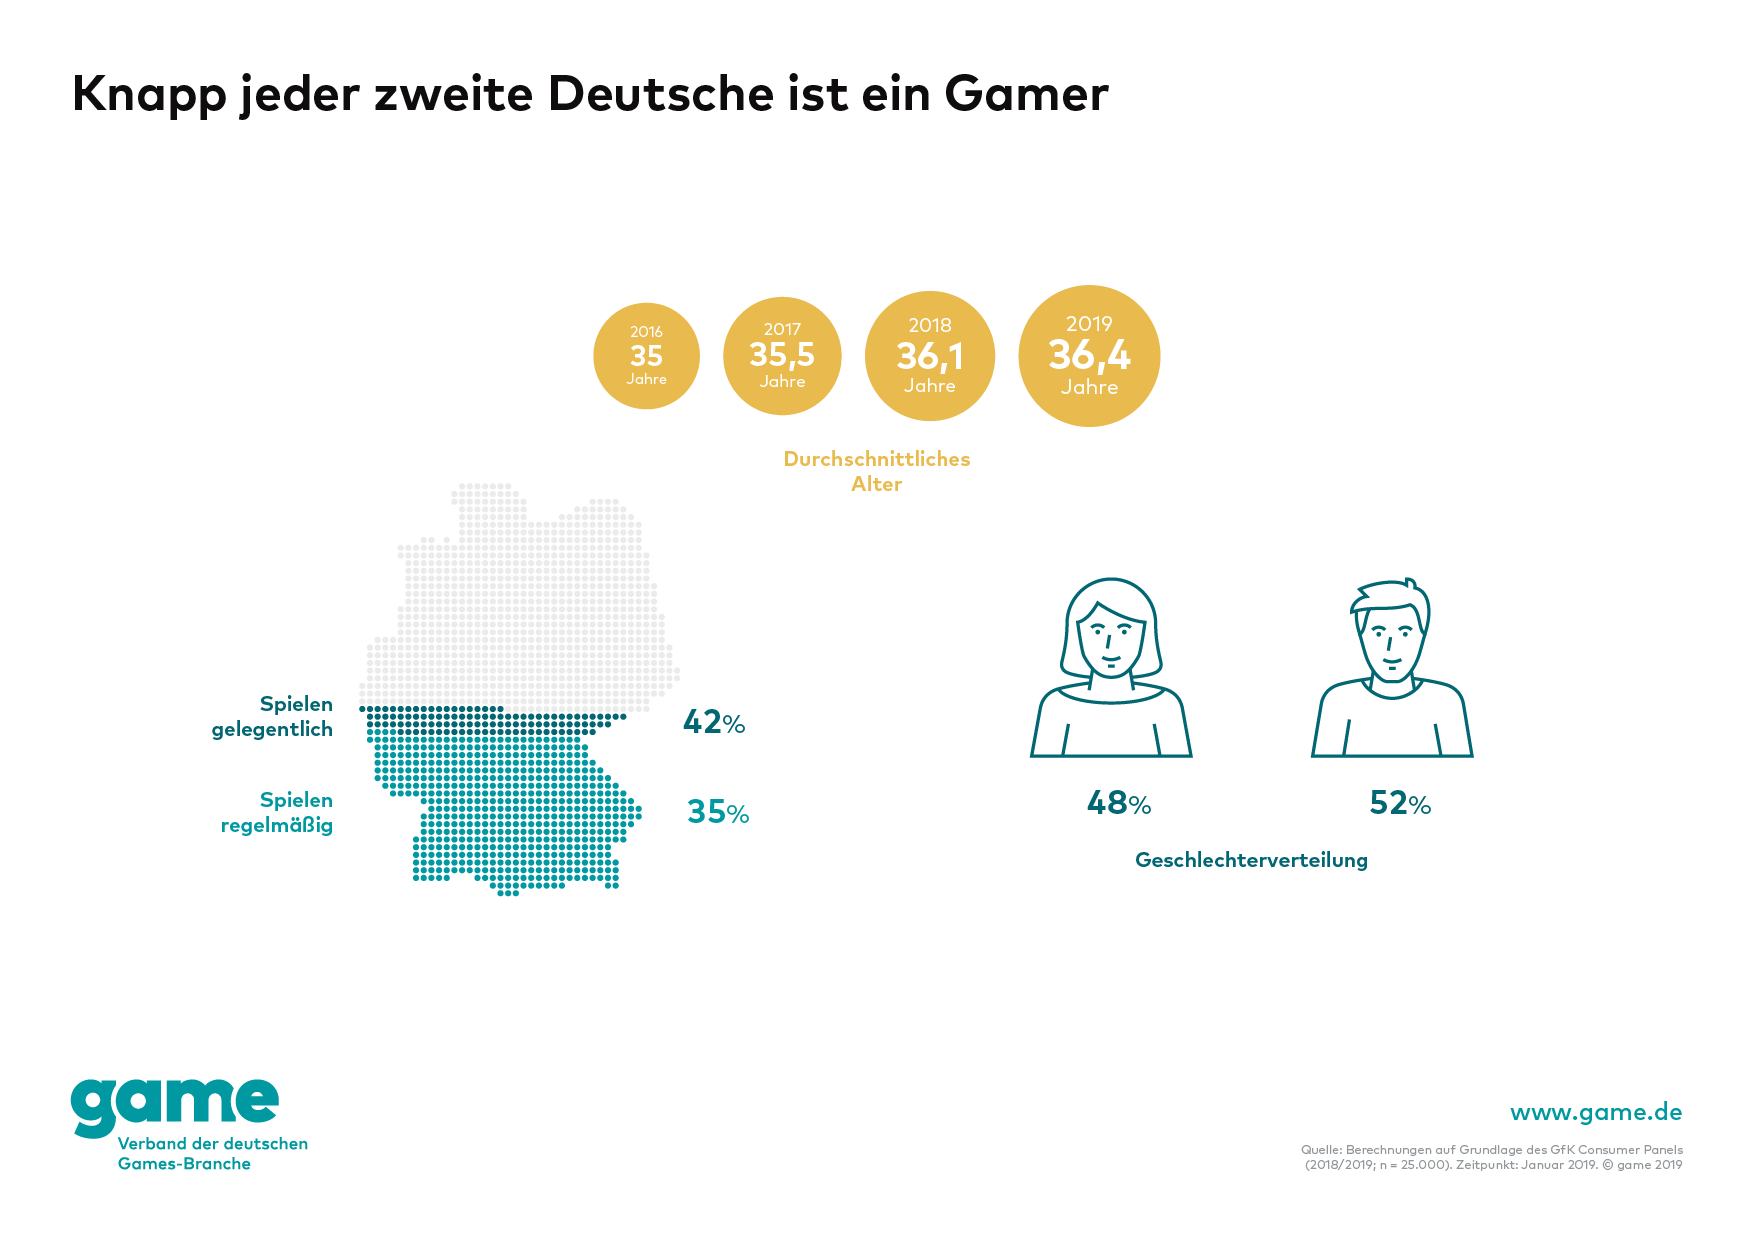 Nutzer digitaler Spiele in Deutschland 2019